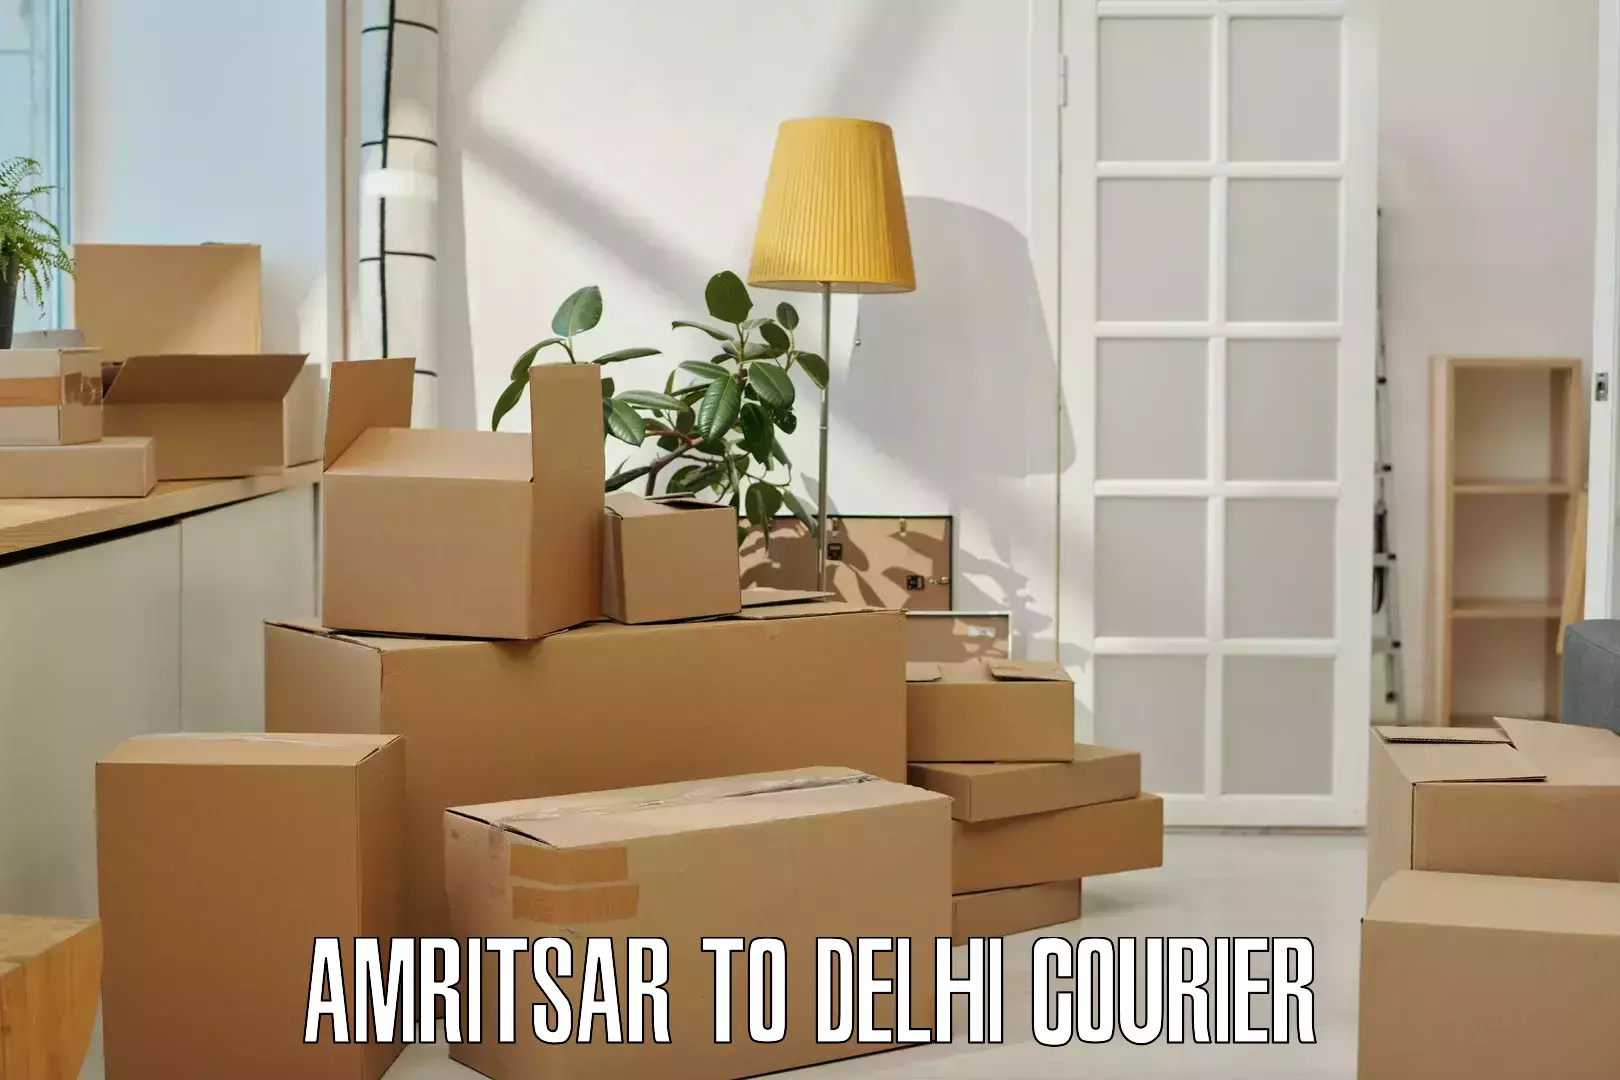 Courier insurance Amritsar to Jamia Millia Islamia New Delhi